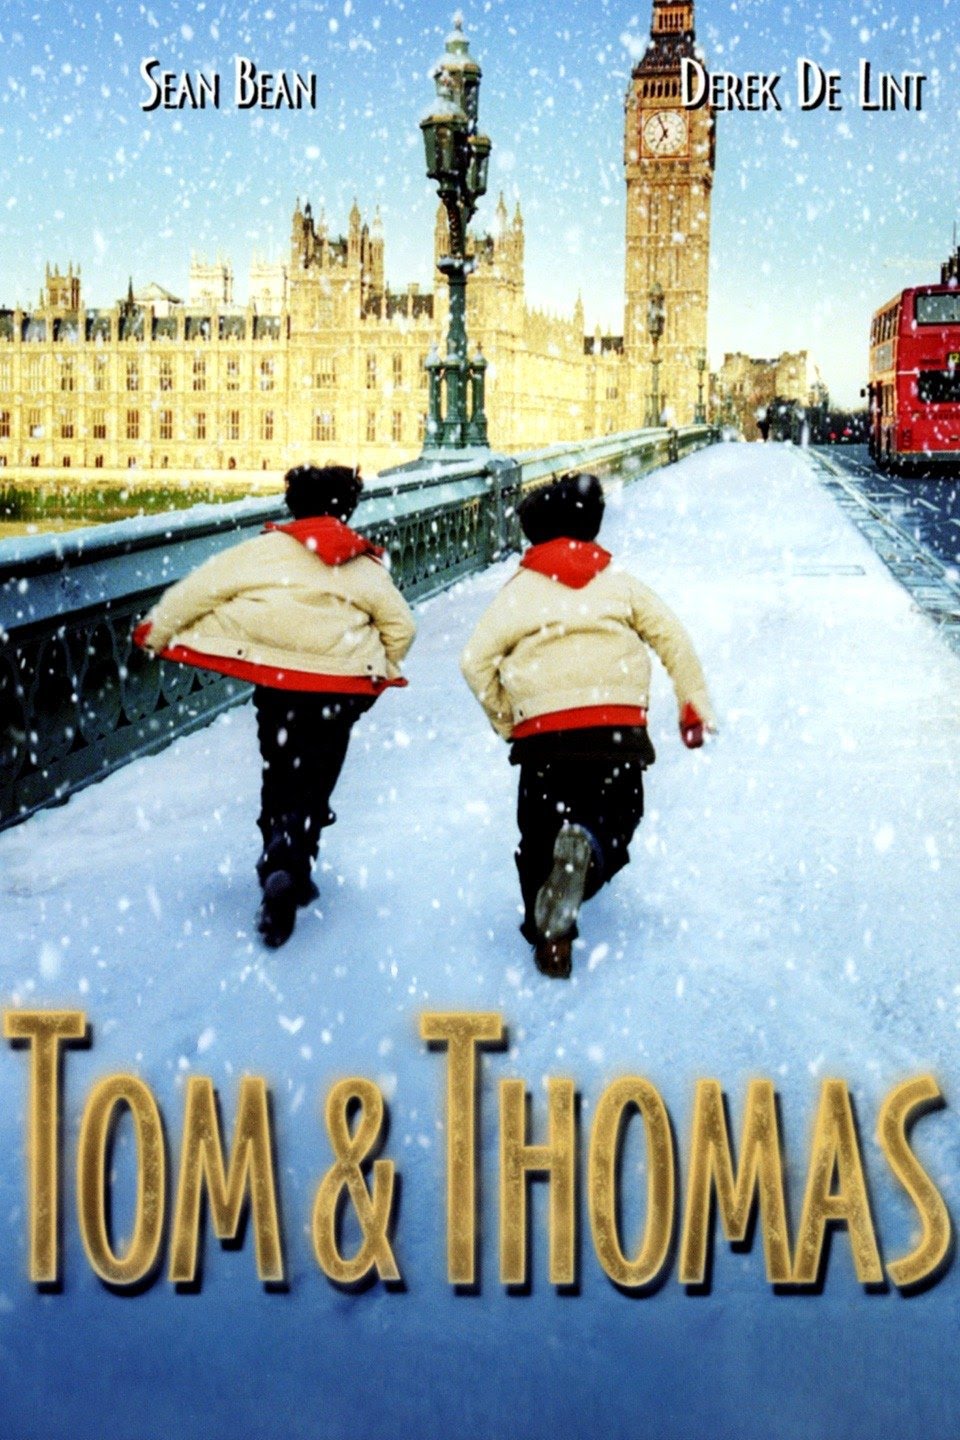 Tom & Thomas (2002) Screenshot 5